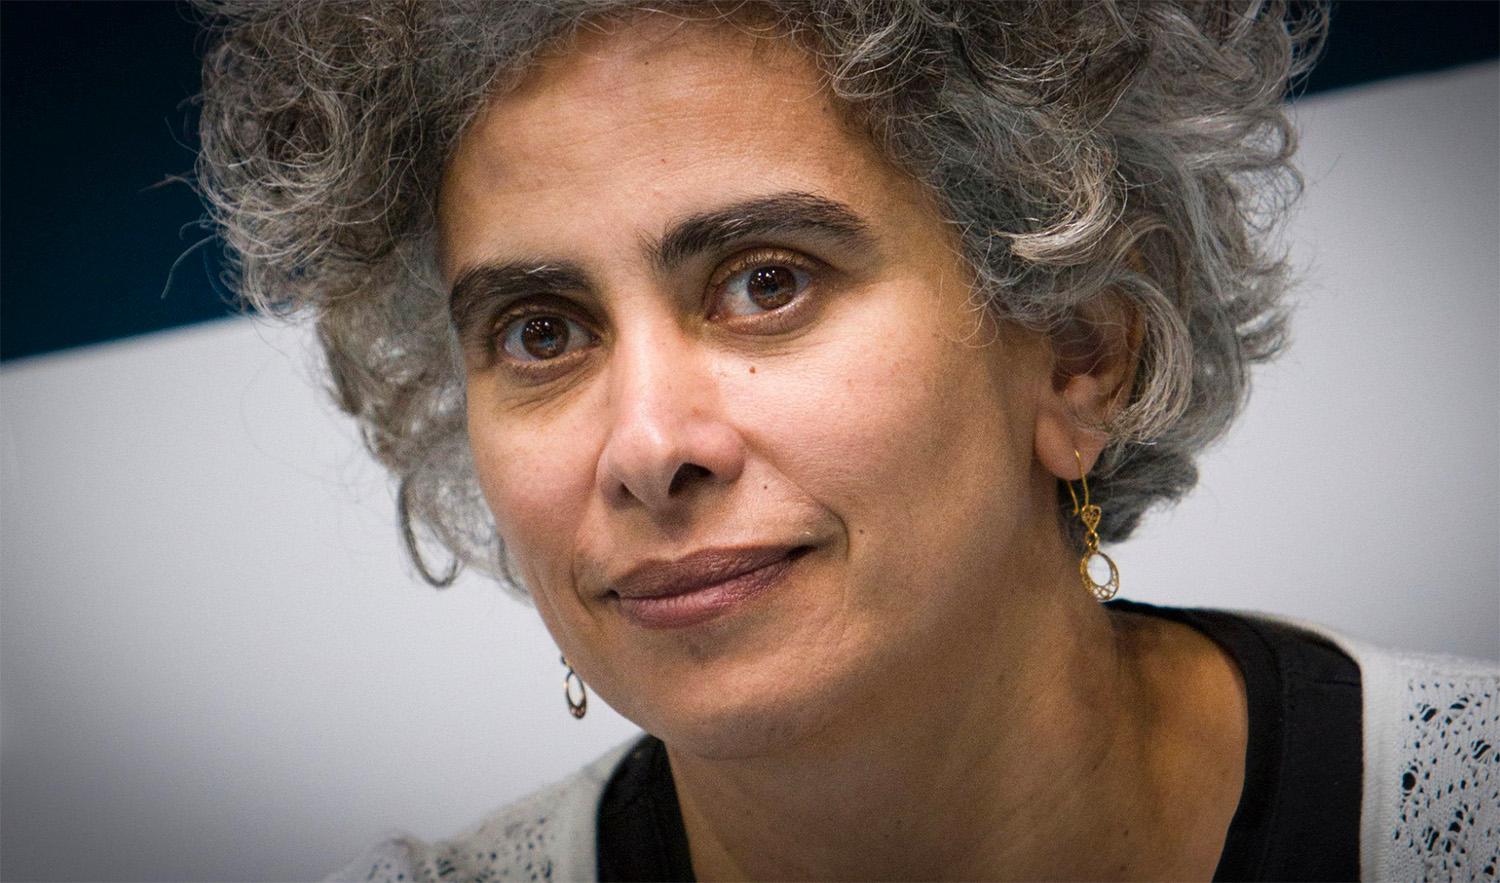 Den palestinska författaren Adania Shibli skulle ha fått ett pris under den just öppnade bokmässan i Frankfurt. Efter Hamas attacker på Israel den 7 oktober sköts dock prisceremonin upp. Hundratals författare har nu skrivit ett upprop till stöd för Shibli.